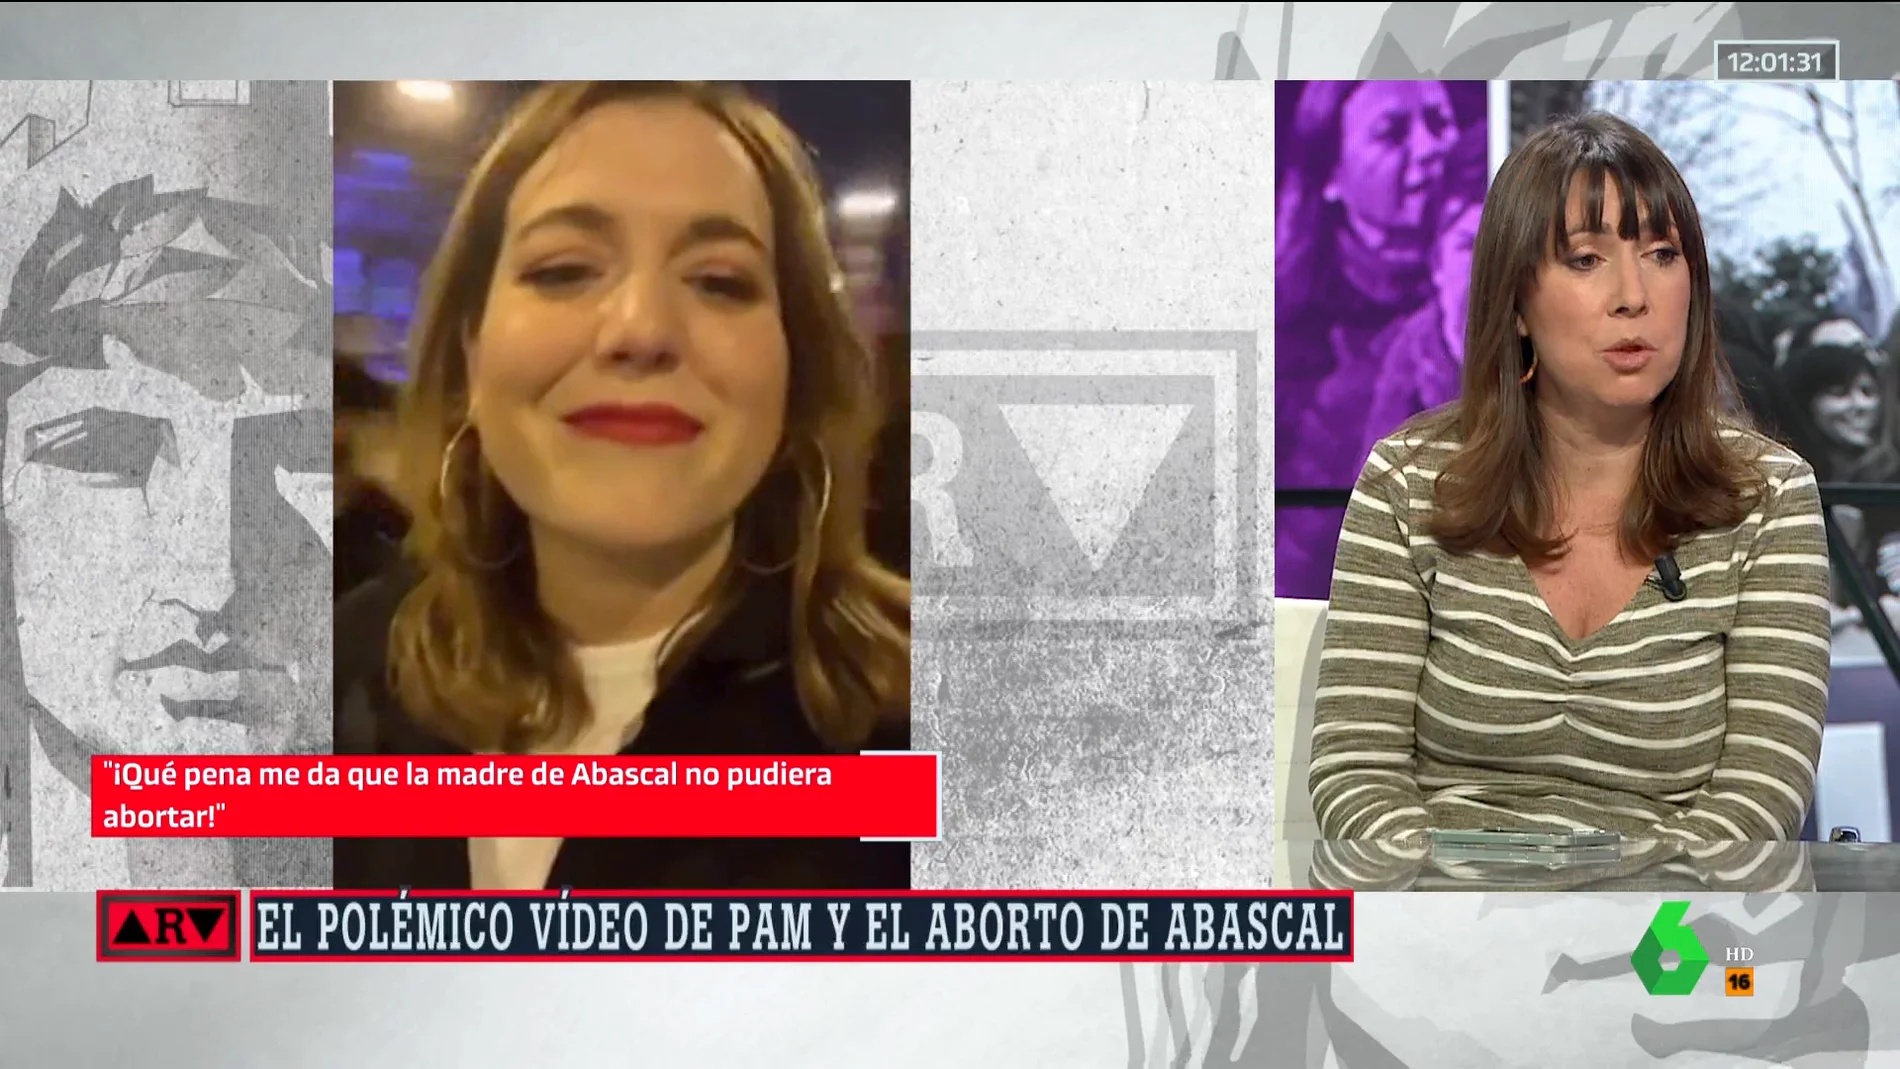 El tajante análisis de Bea Parera sobre el polémico vídeo de Rodríguez Pam: "Parece que Igualdad busca perder votos"